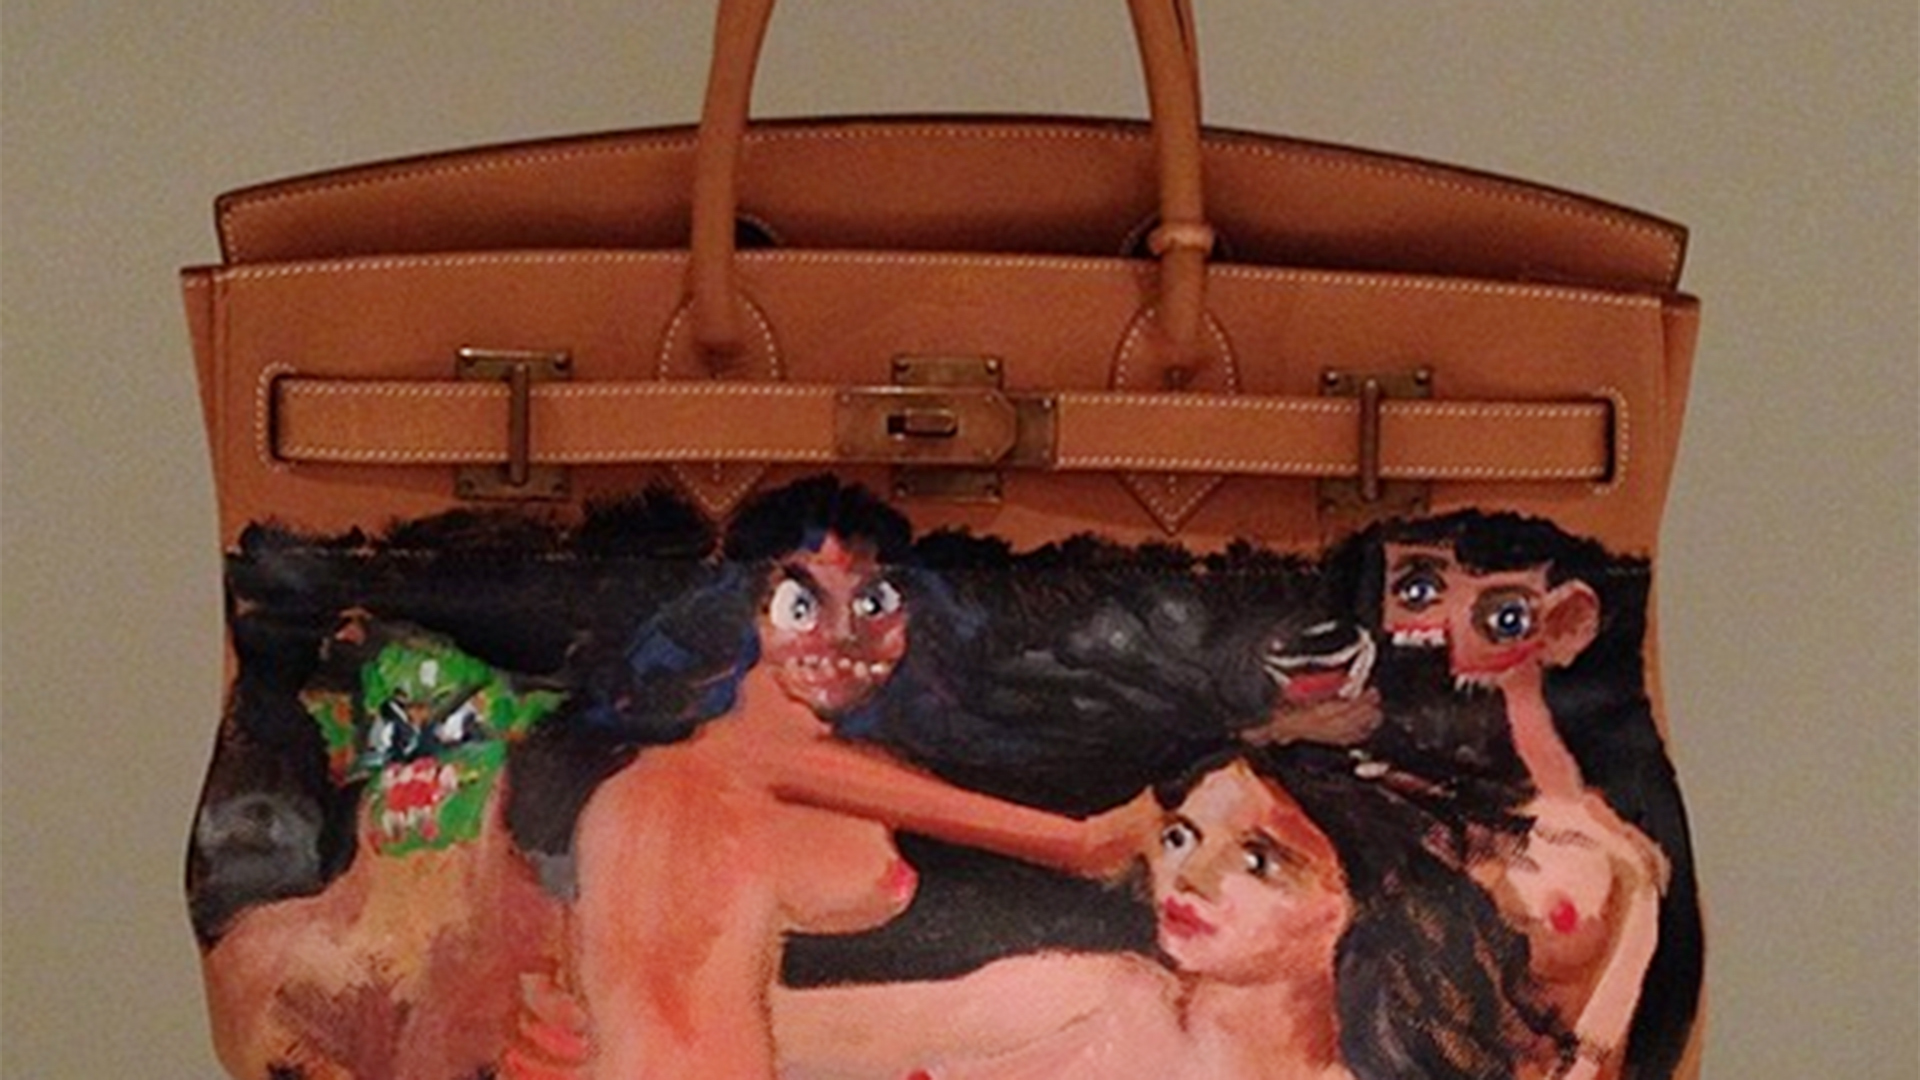 Kim Kardashian with an Hermes Birkin Bag  Kim kardashian bags, Hermes bag  birkin, Kim kardashian outfits